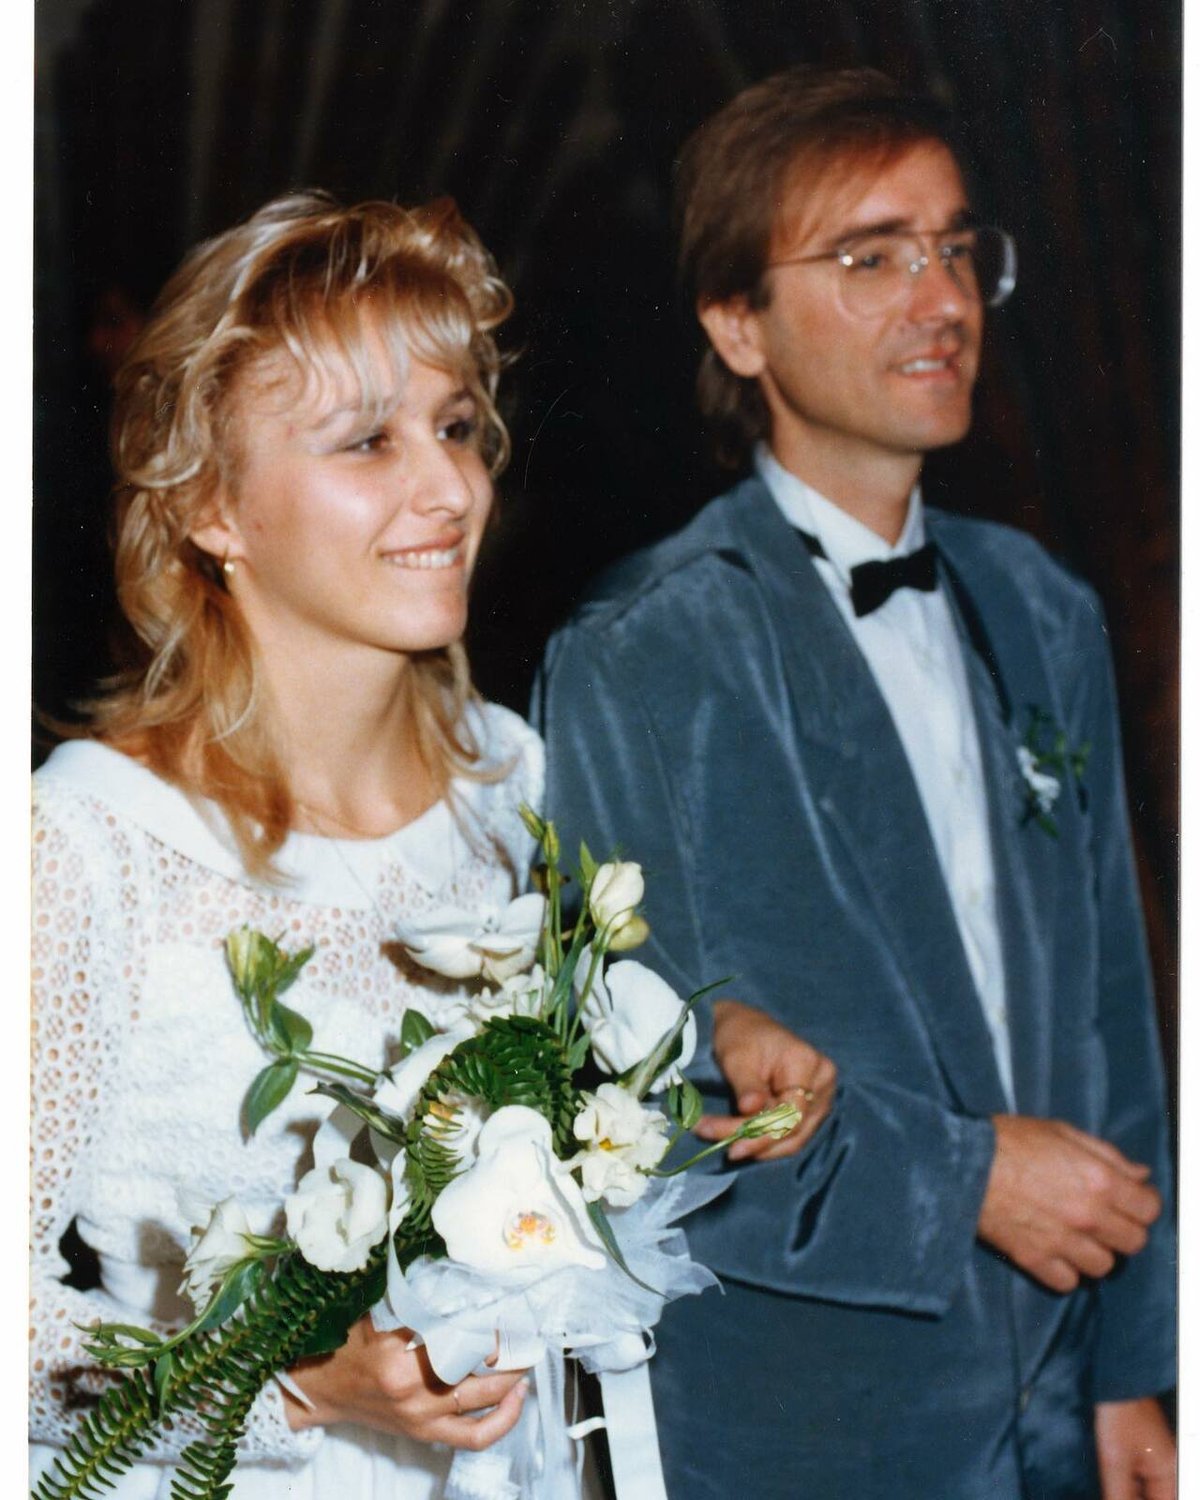 Kateřina sdílela svatební fotku s manželem 